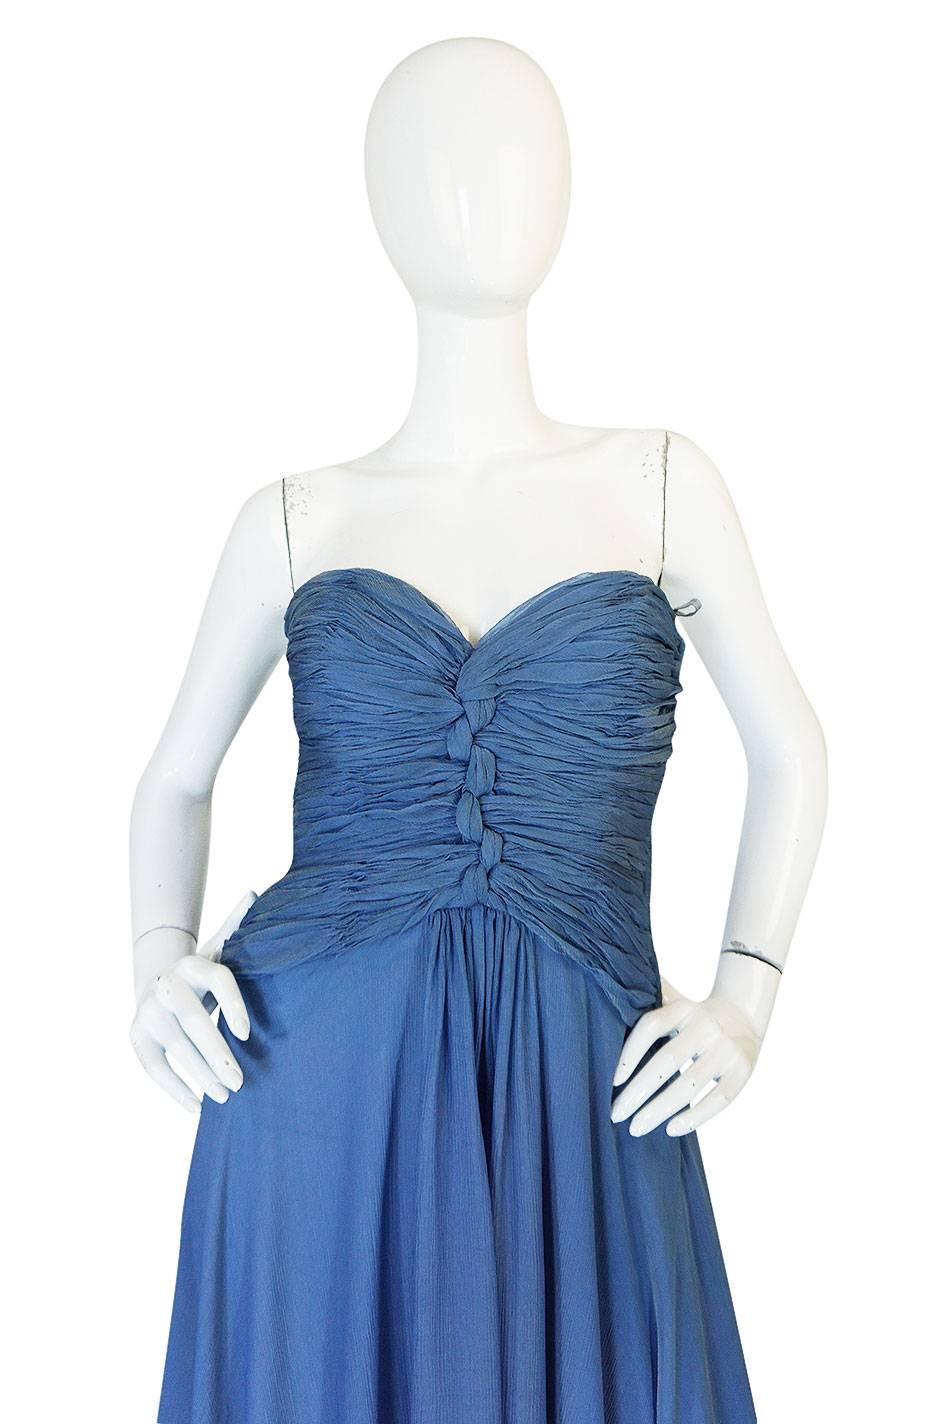 Women's 1970s Oscar de la Renta Ice Blue Silk Chiffon Dress & Cape